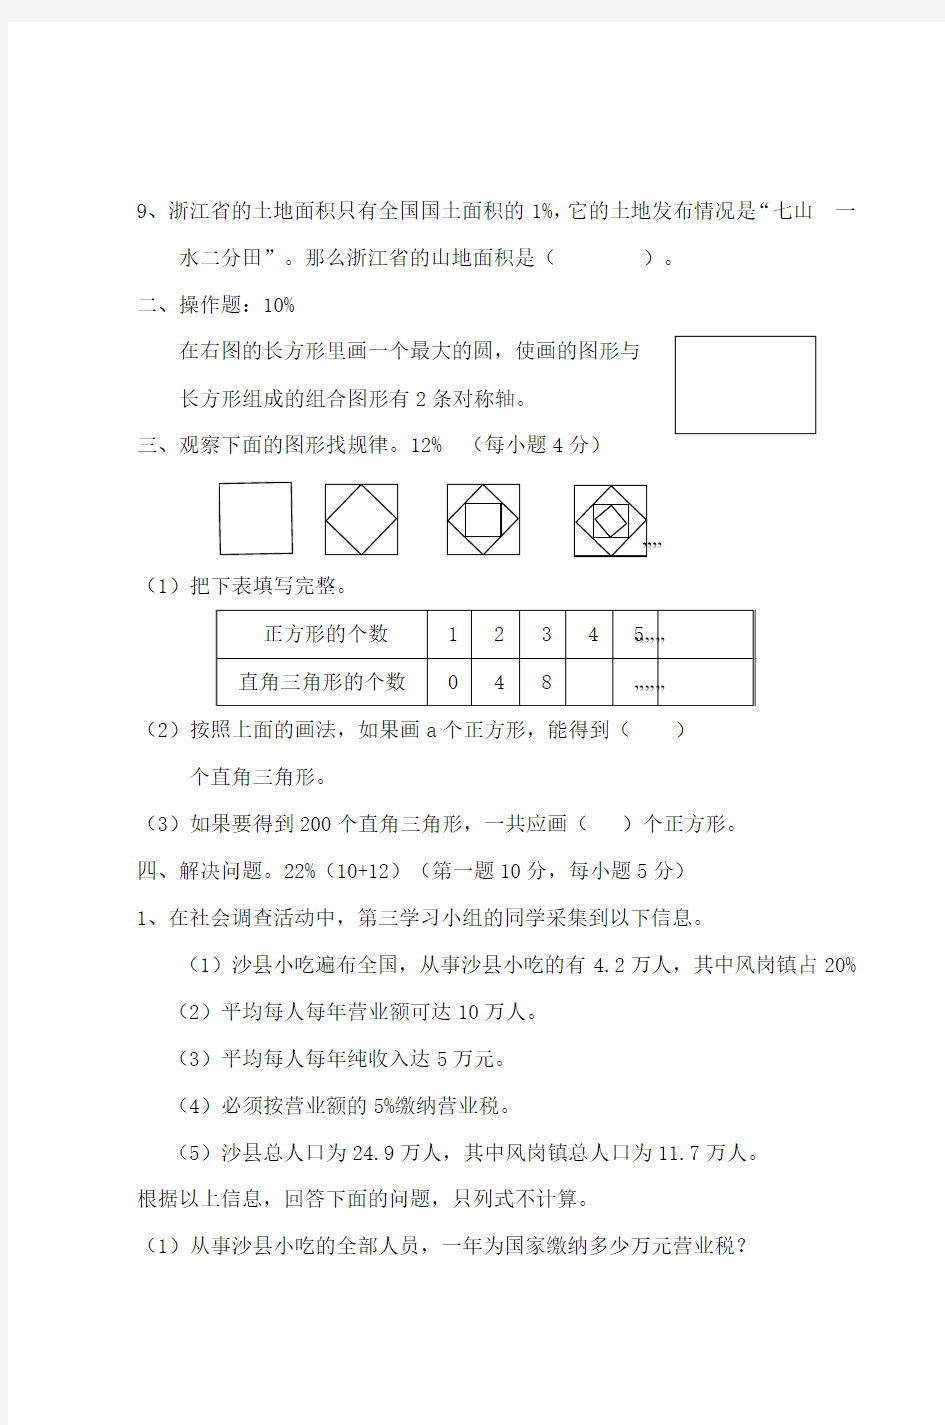 2009年仙游县六年级综合知识竞赛数学题